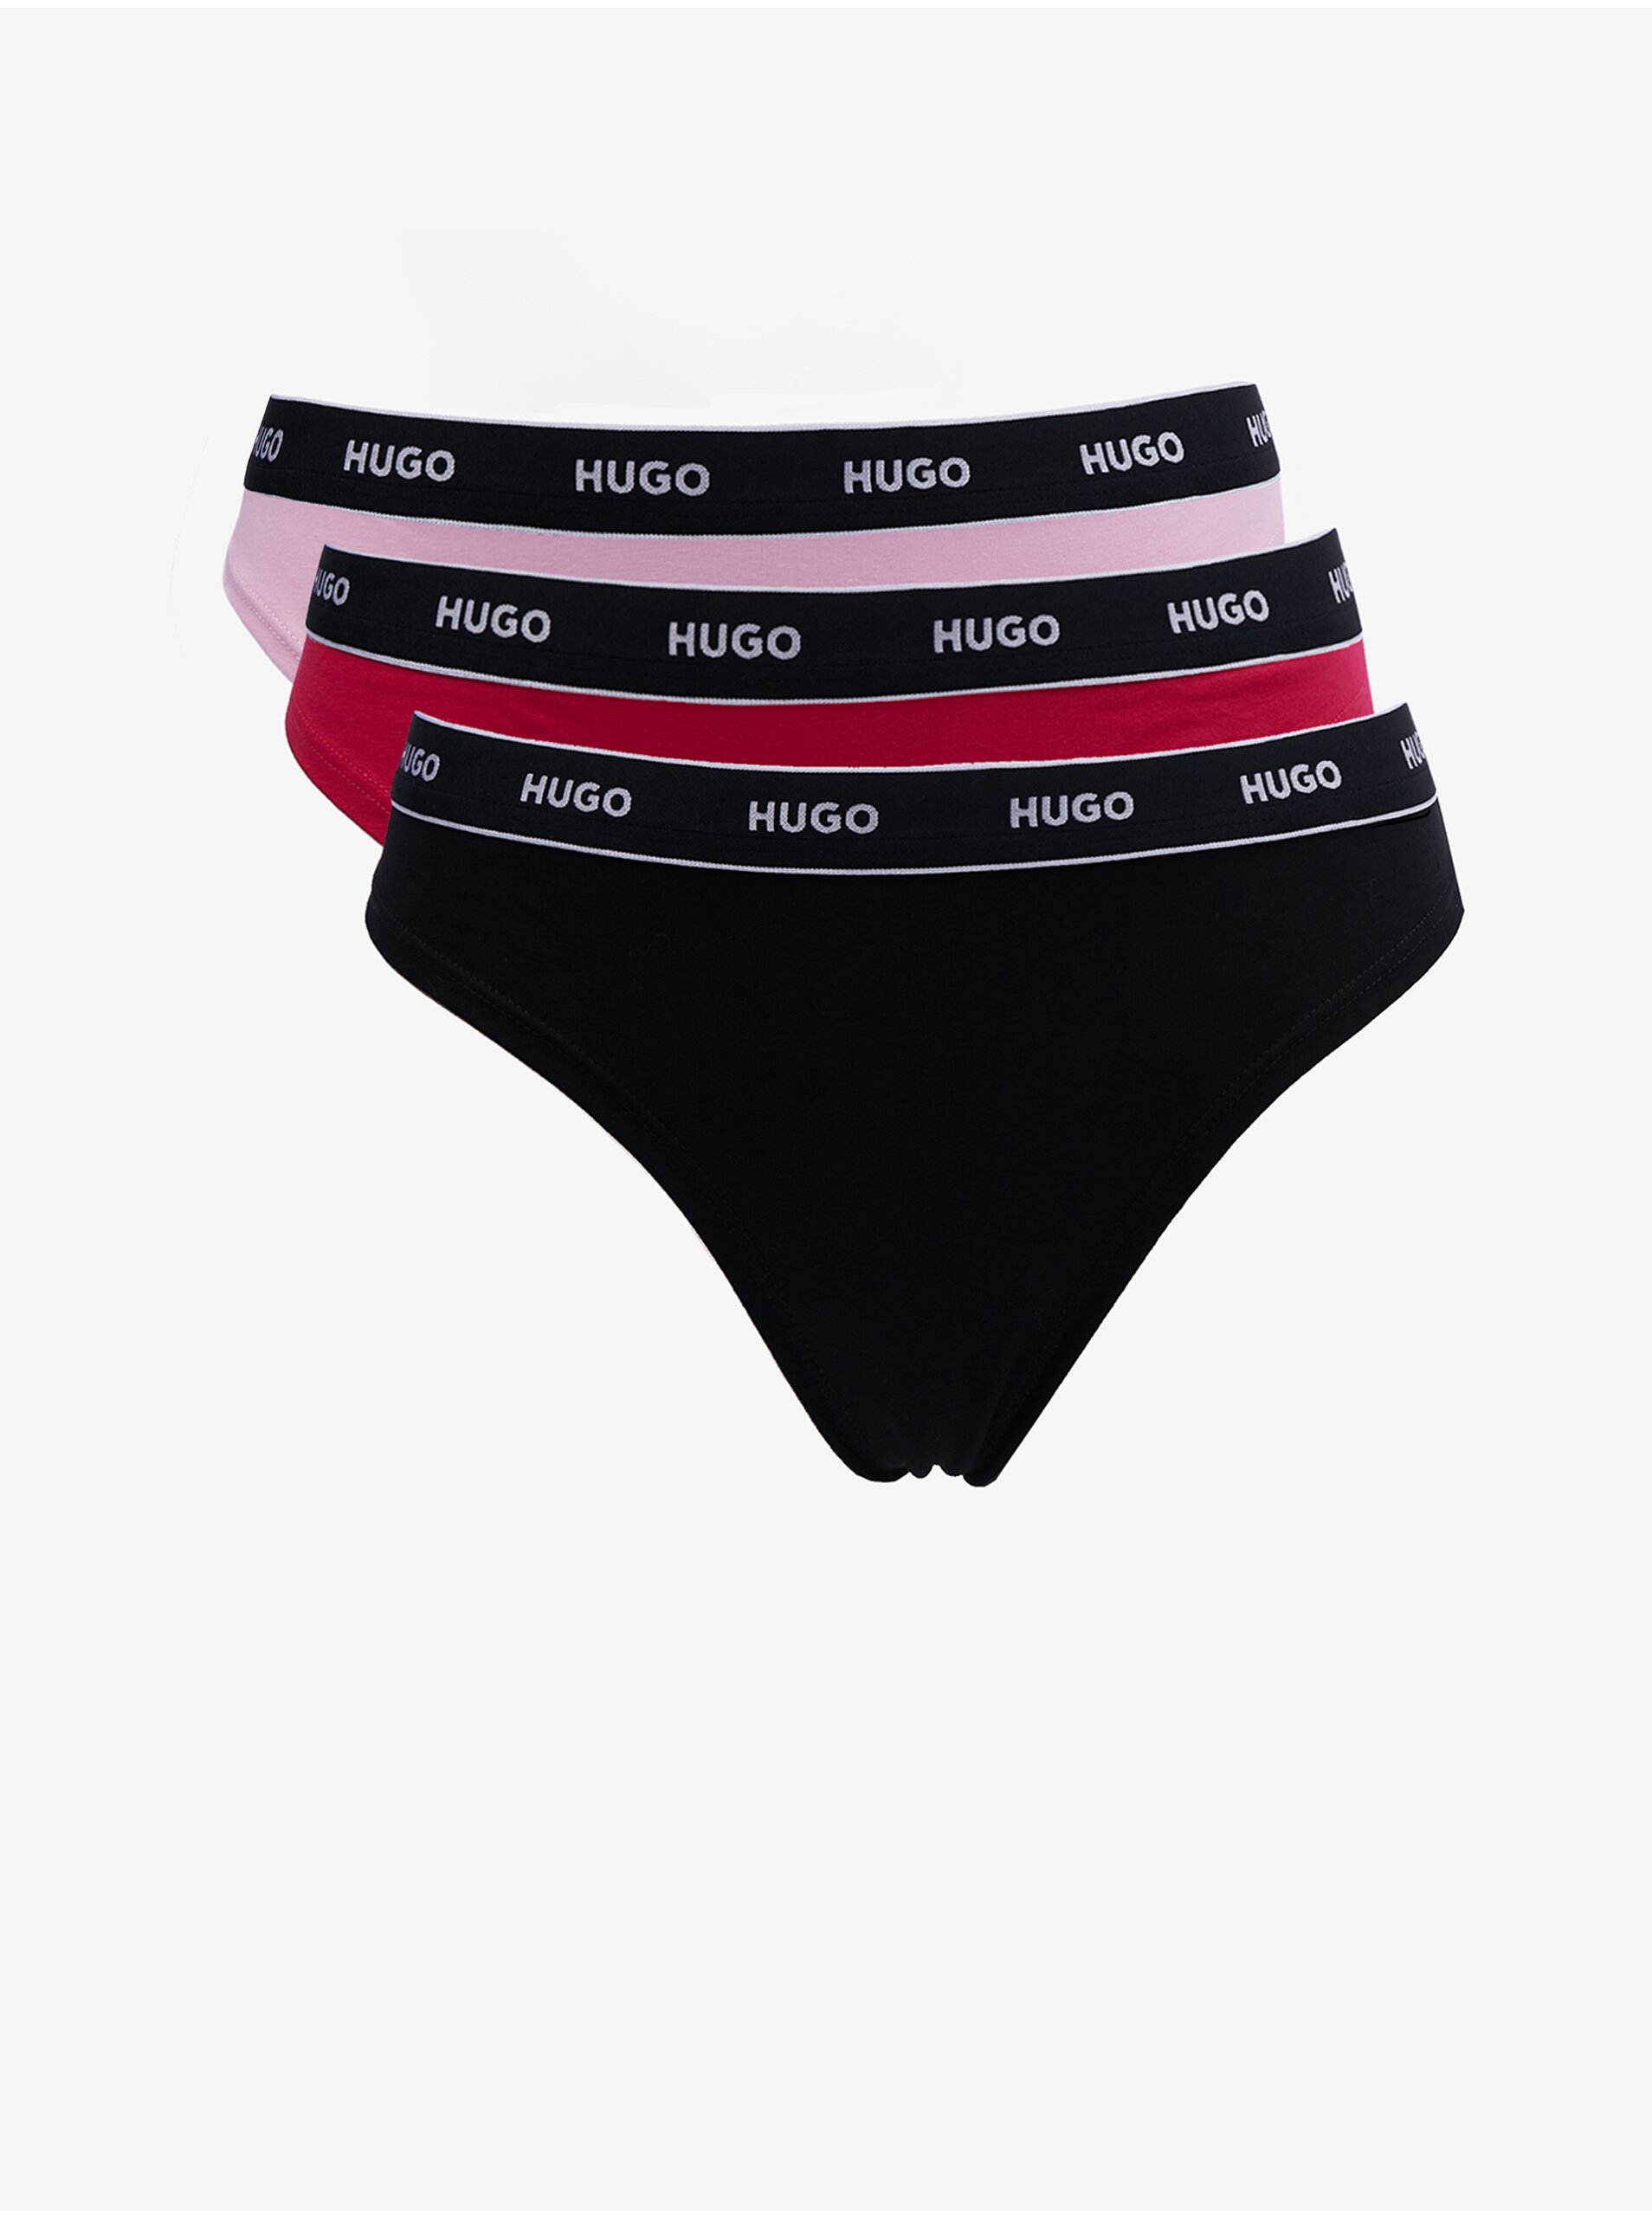 E-shop Sada tří dámských tang v černé, červené a růžové barvě HUGO